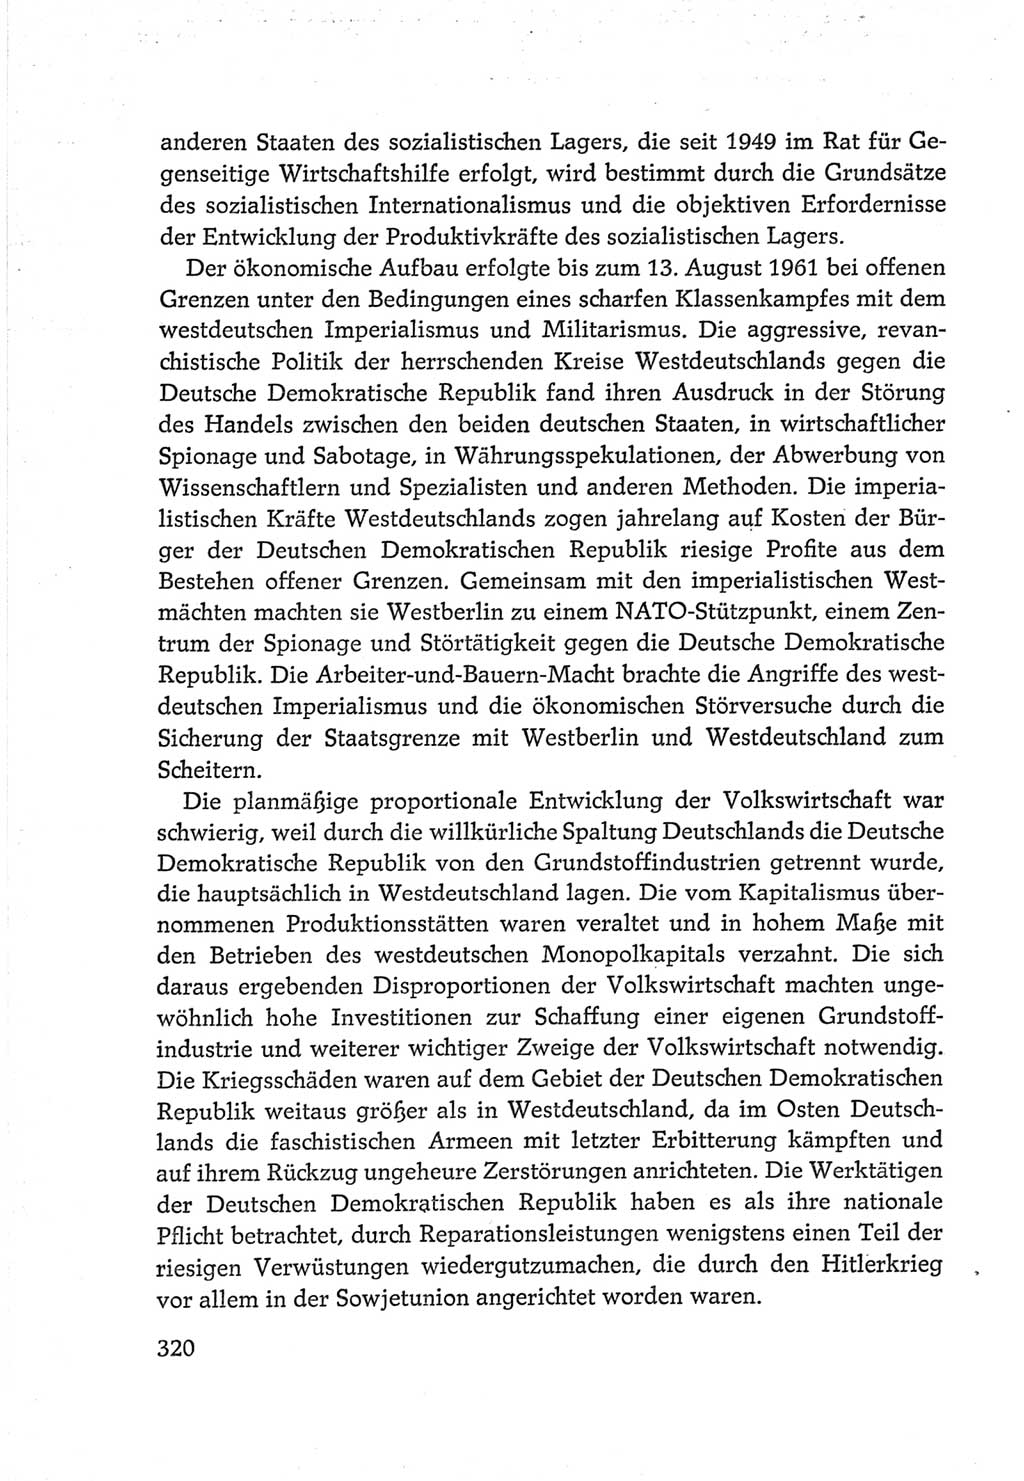 Protokoll der Verhandlungen des Ⅵ. Parteitages der Sozialistischen Einheitspartei Deutschlands (SED) [Deutsche Demokratische Republik (DDR)] 1963, Band Ⅳ, Seite 320 (Prot. Verh. Ⅵ. PT SED DDR 1963, Bd. Ⅳ, S. 320)